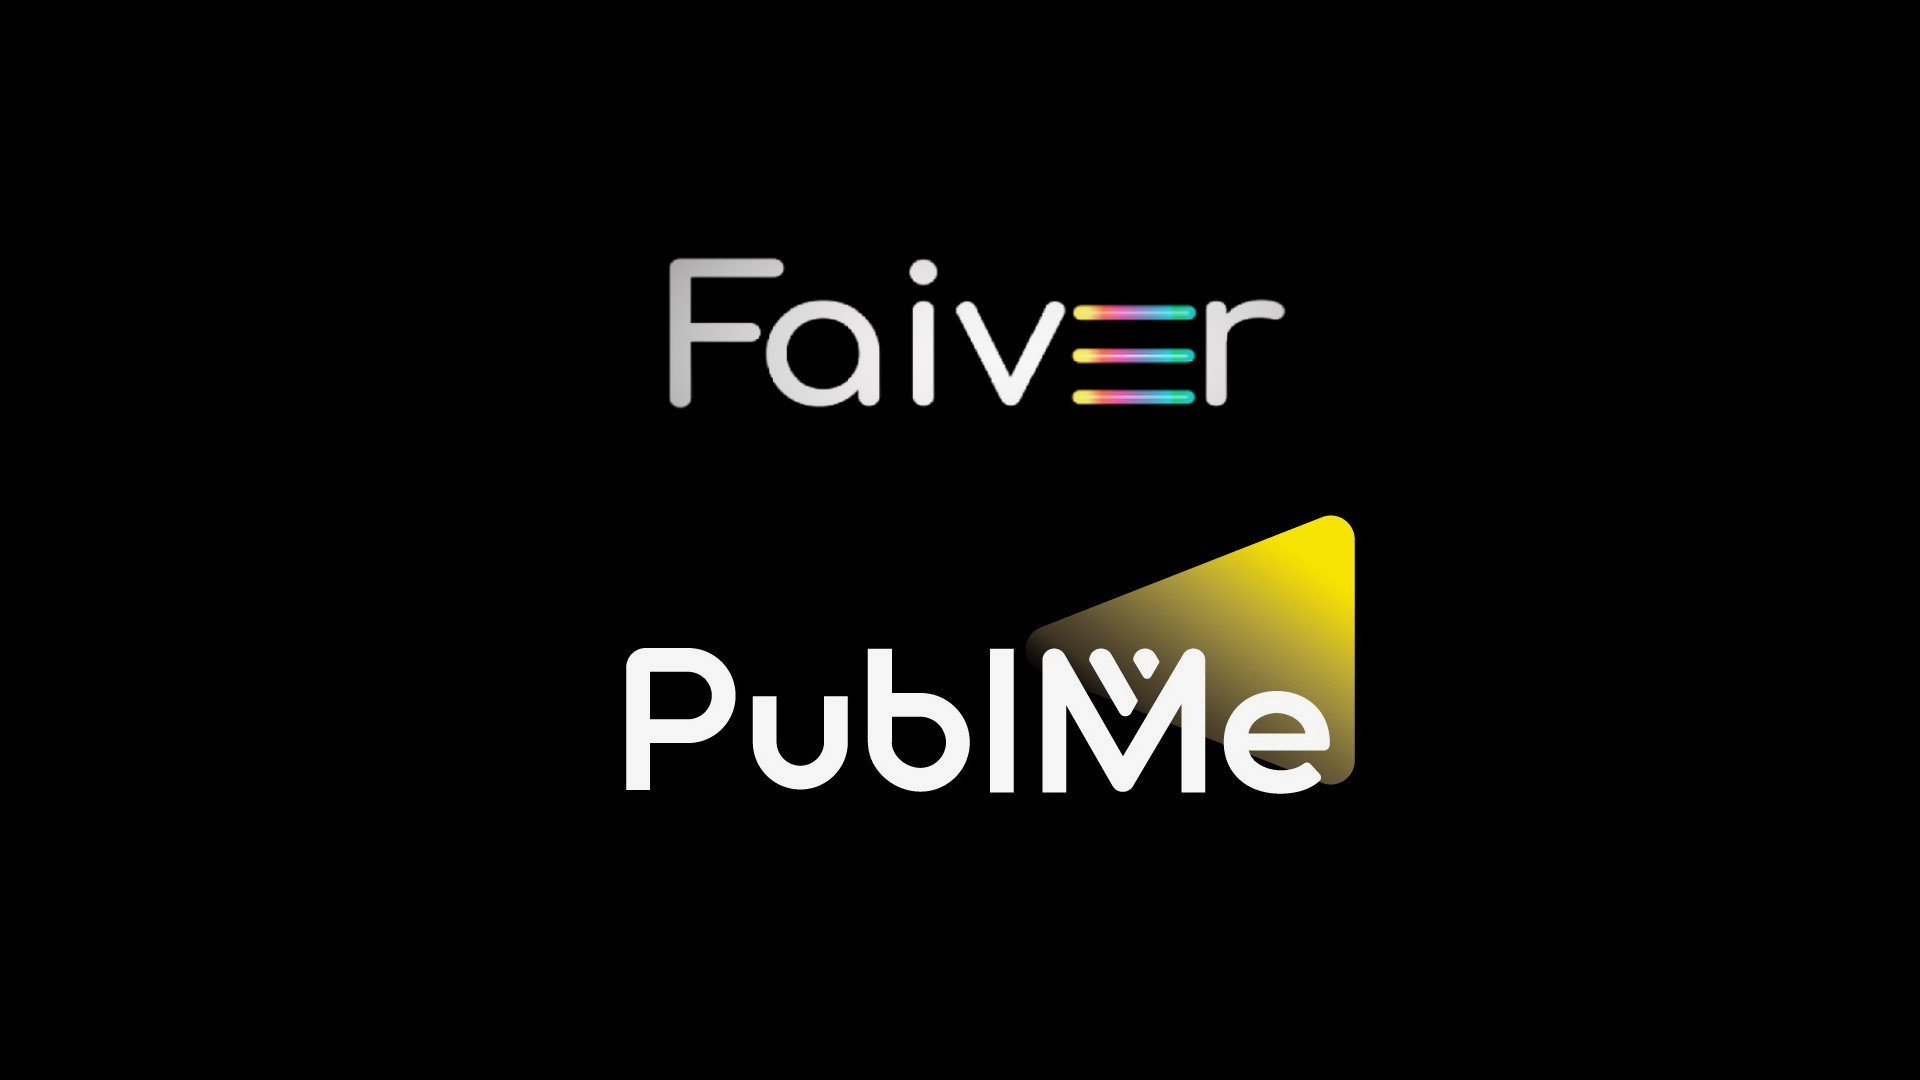 PublMe will be providing NFT for the creators